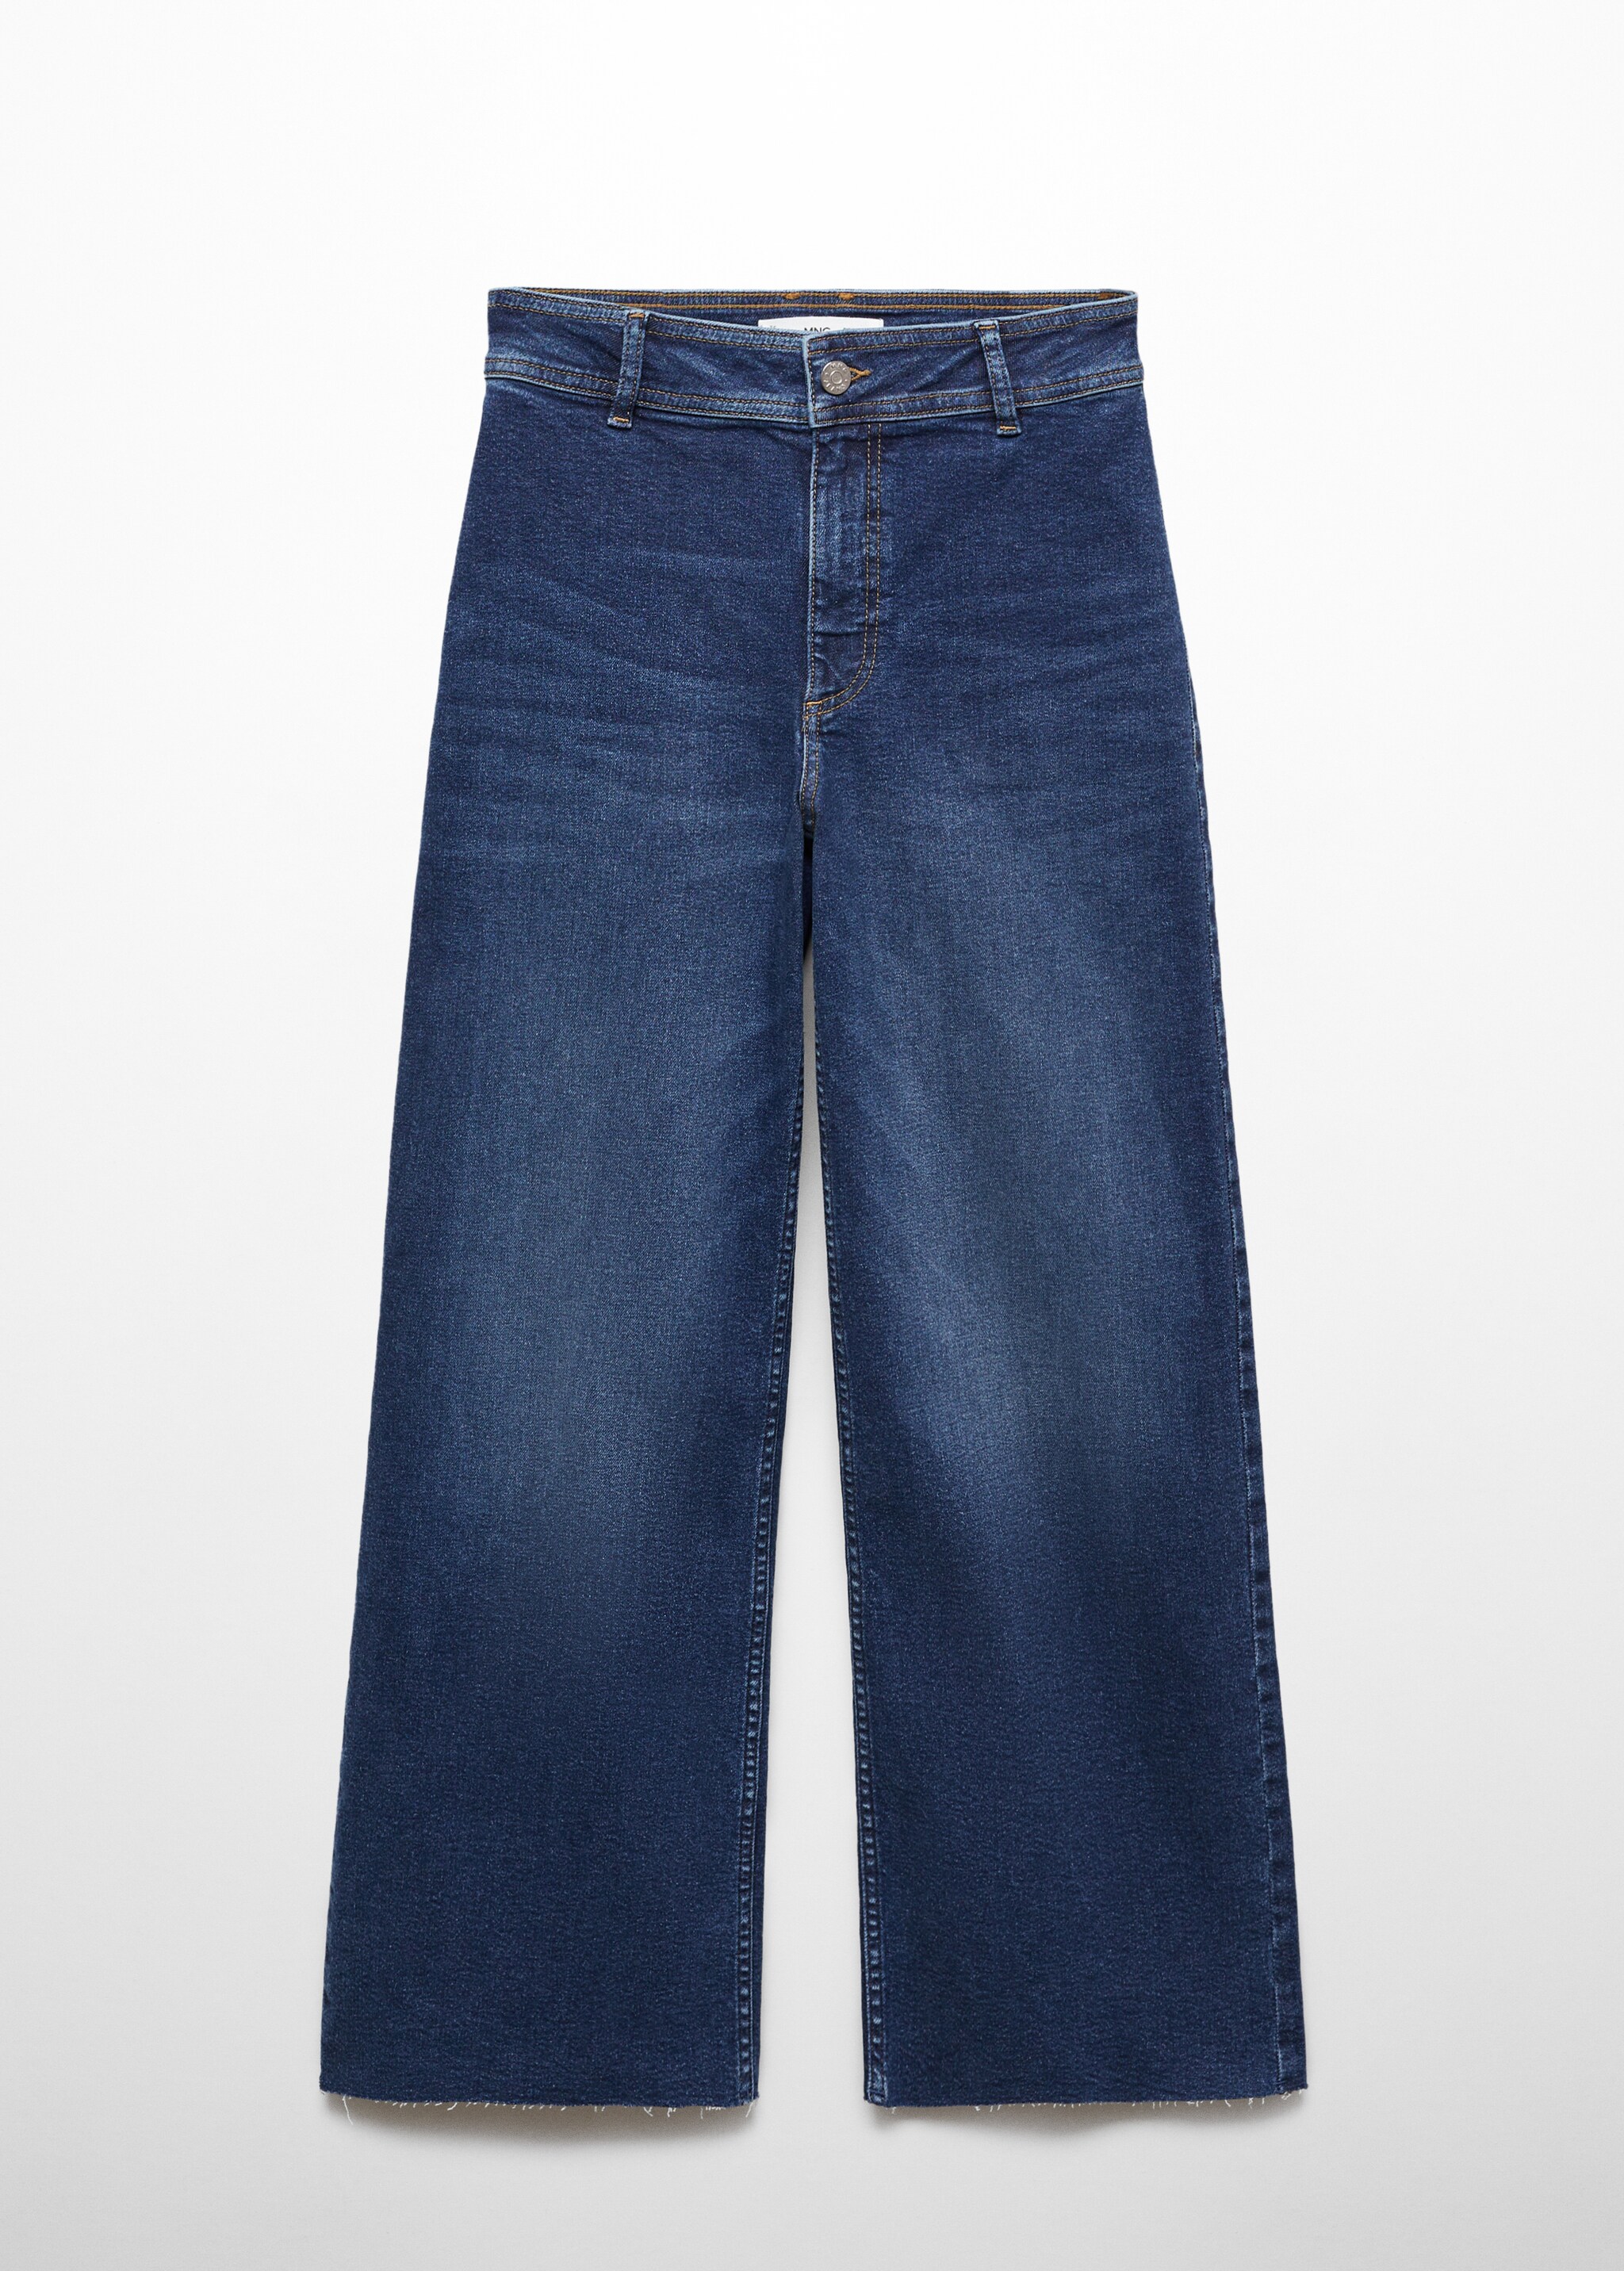 Jupe-culotte jean taille haute - Article sans modèle